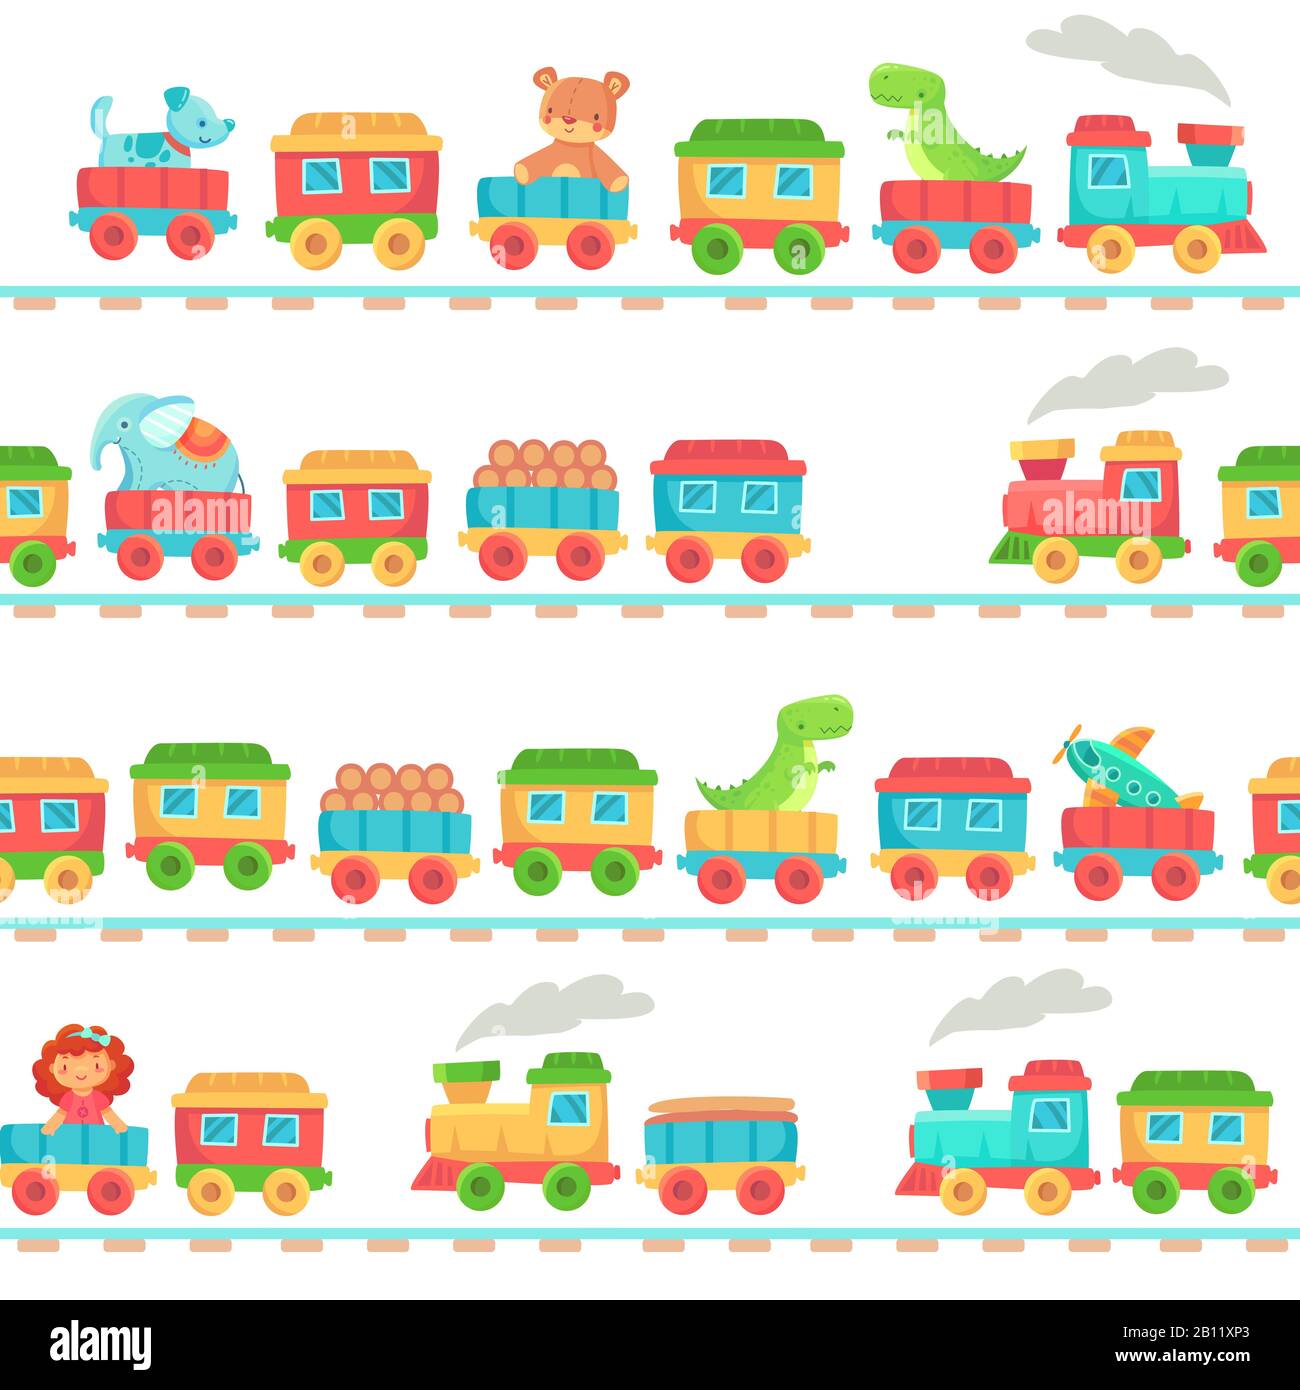 Kinder Spielzeug-Zugmuster. Eisenbahnspielzeuge für Kinder, Babyzüge auf Schienen und Kindereisenbahn nahtlose Vektorillustration Stock Vektor